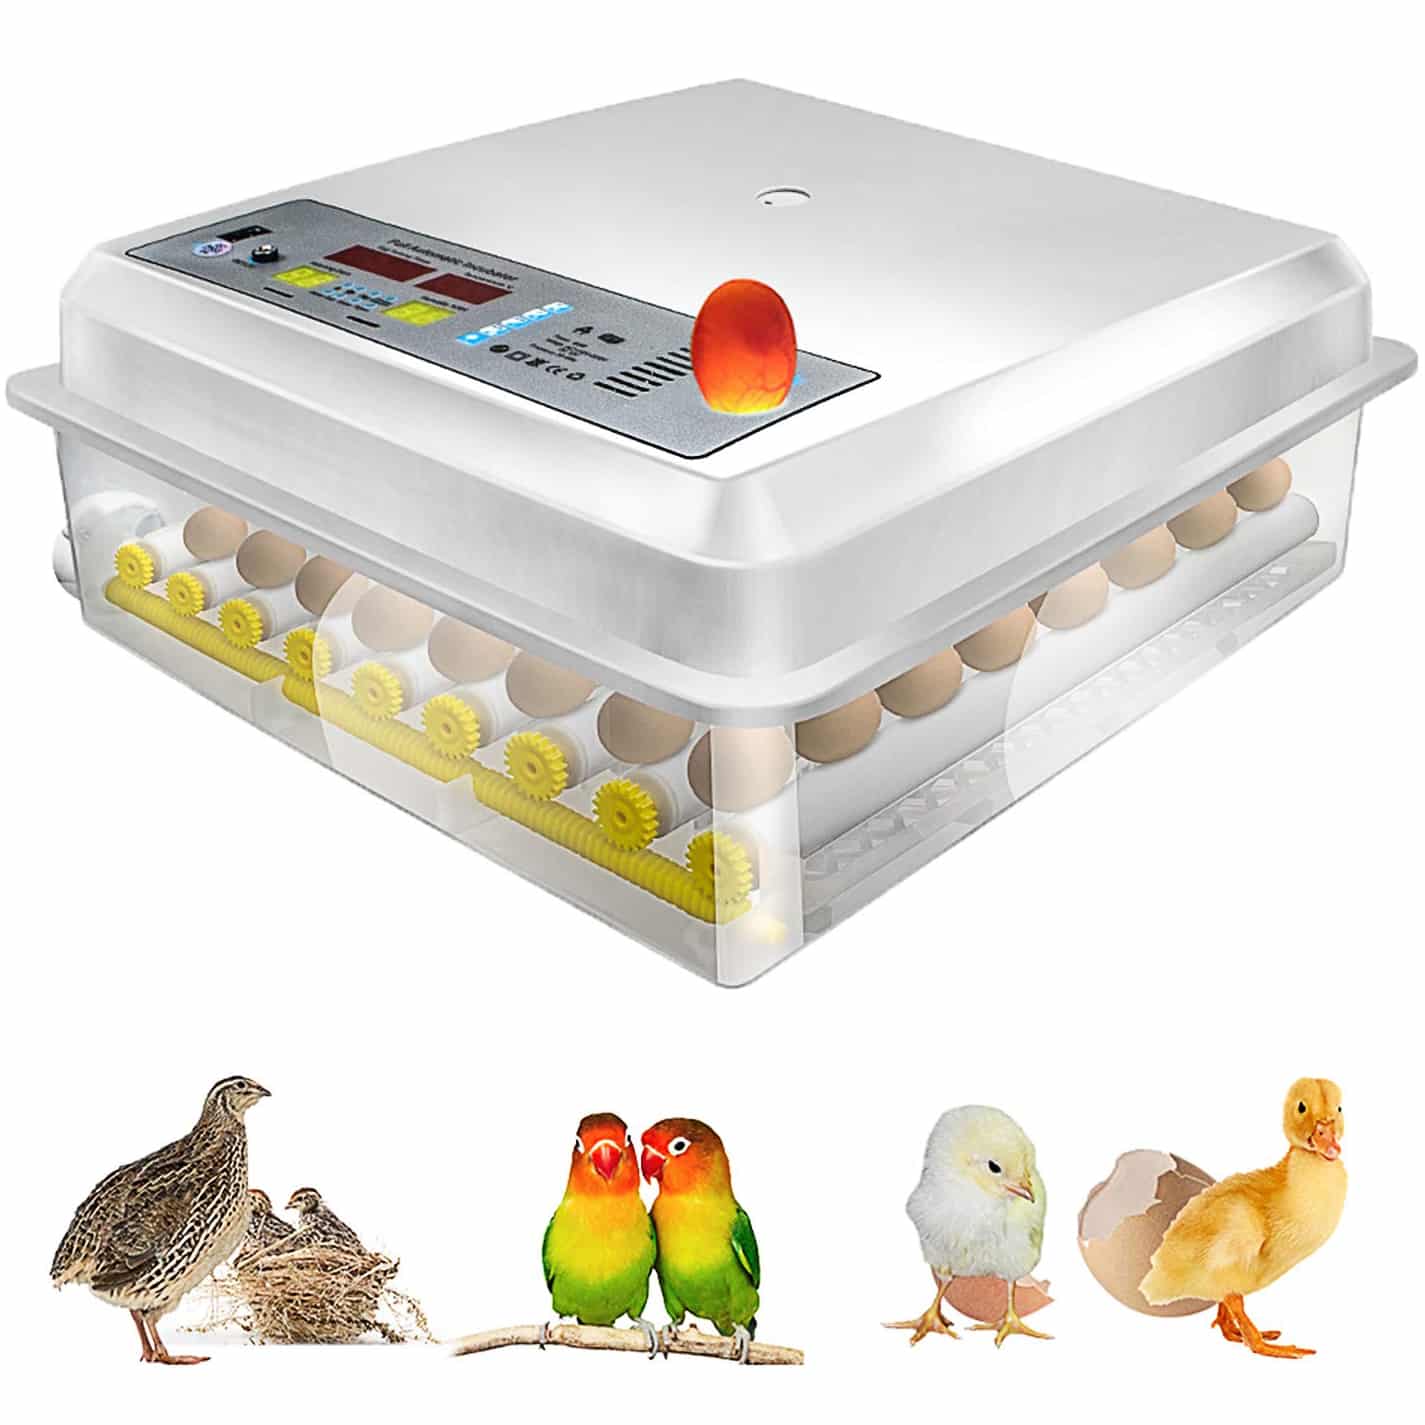 Инкубатор для яиц Egg incubator. Инкубатор Egg Box 3000. MS 36 инкубатор. Инкубатор для яиц автоматический на 200 яиц. Какой купить инкубатор автоматический